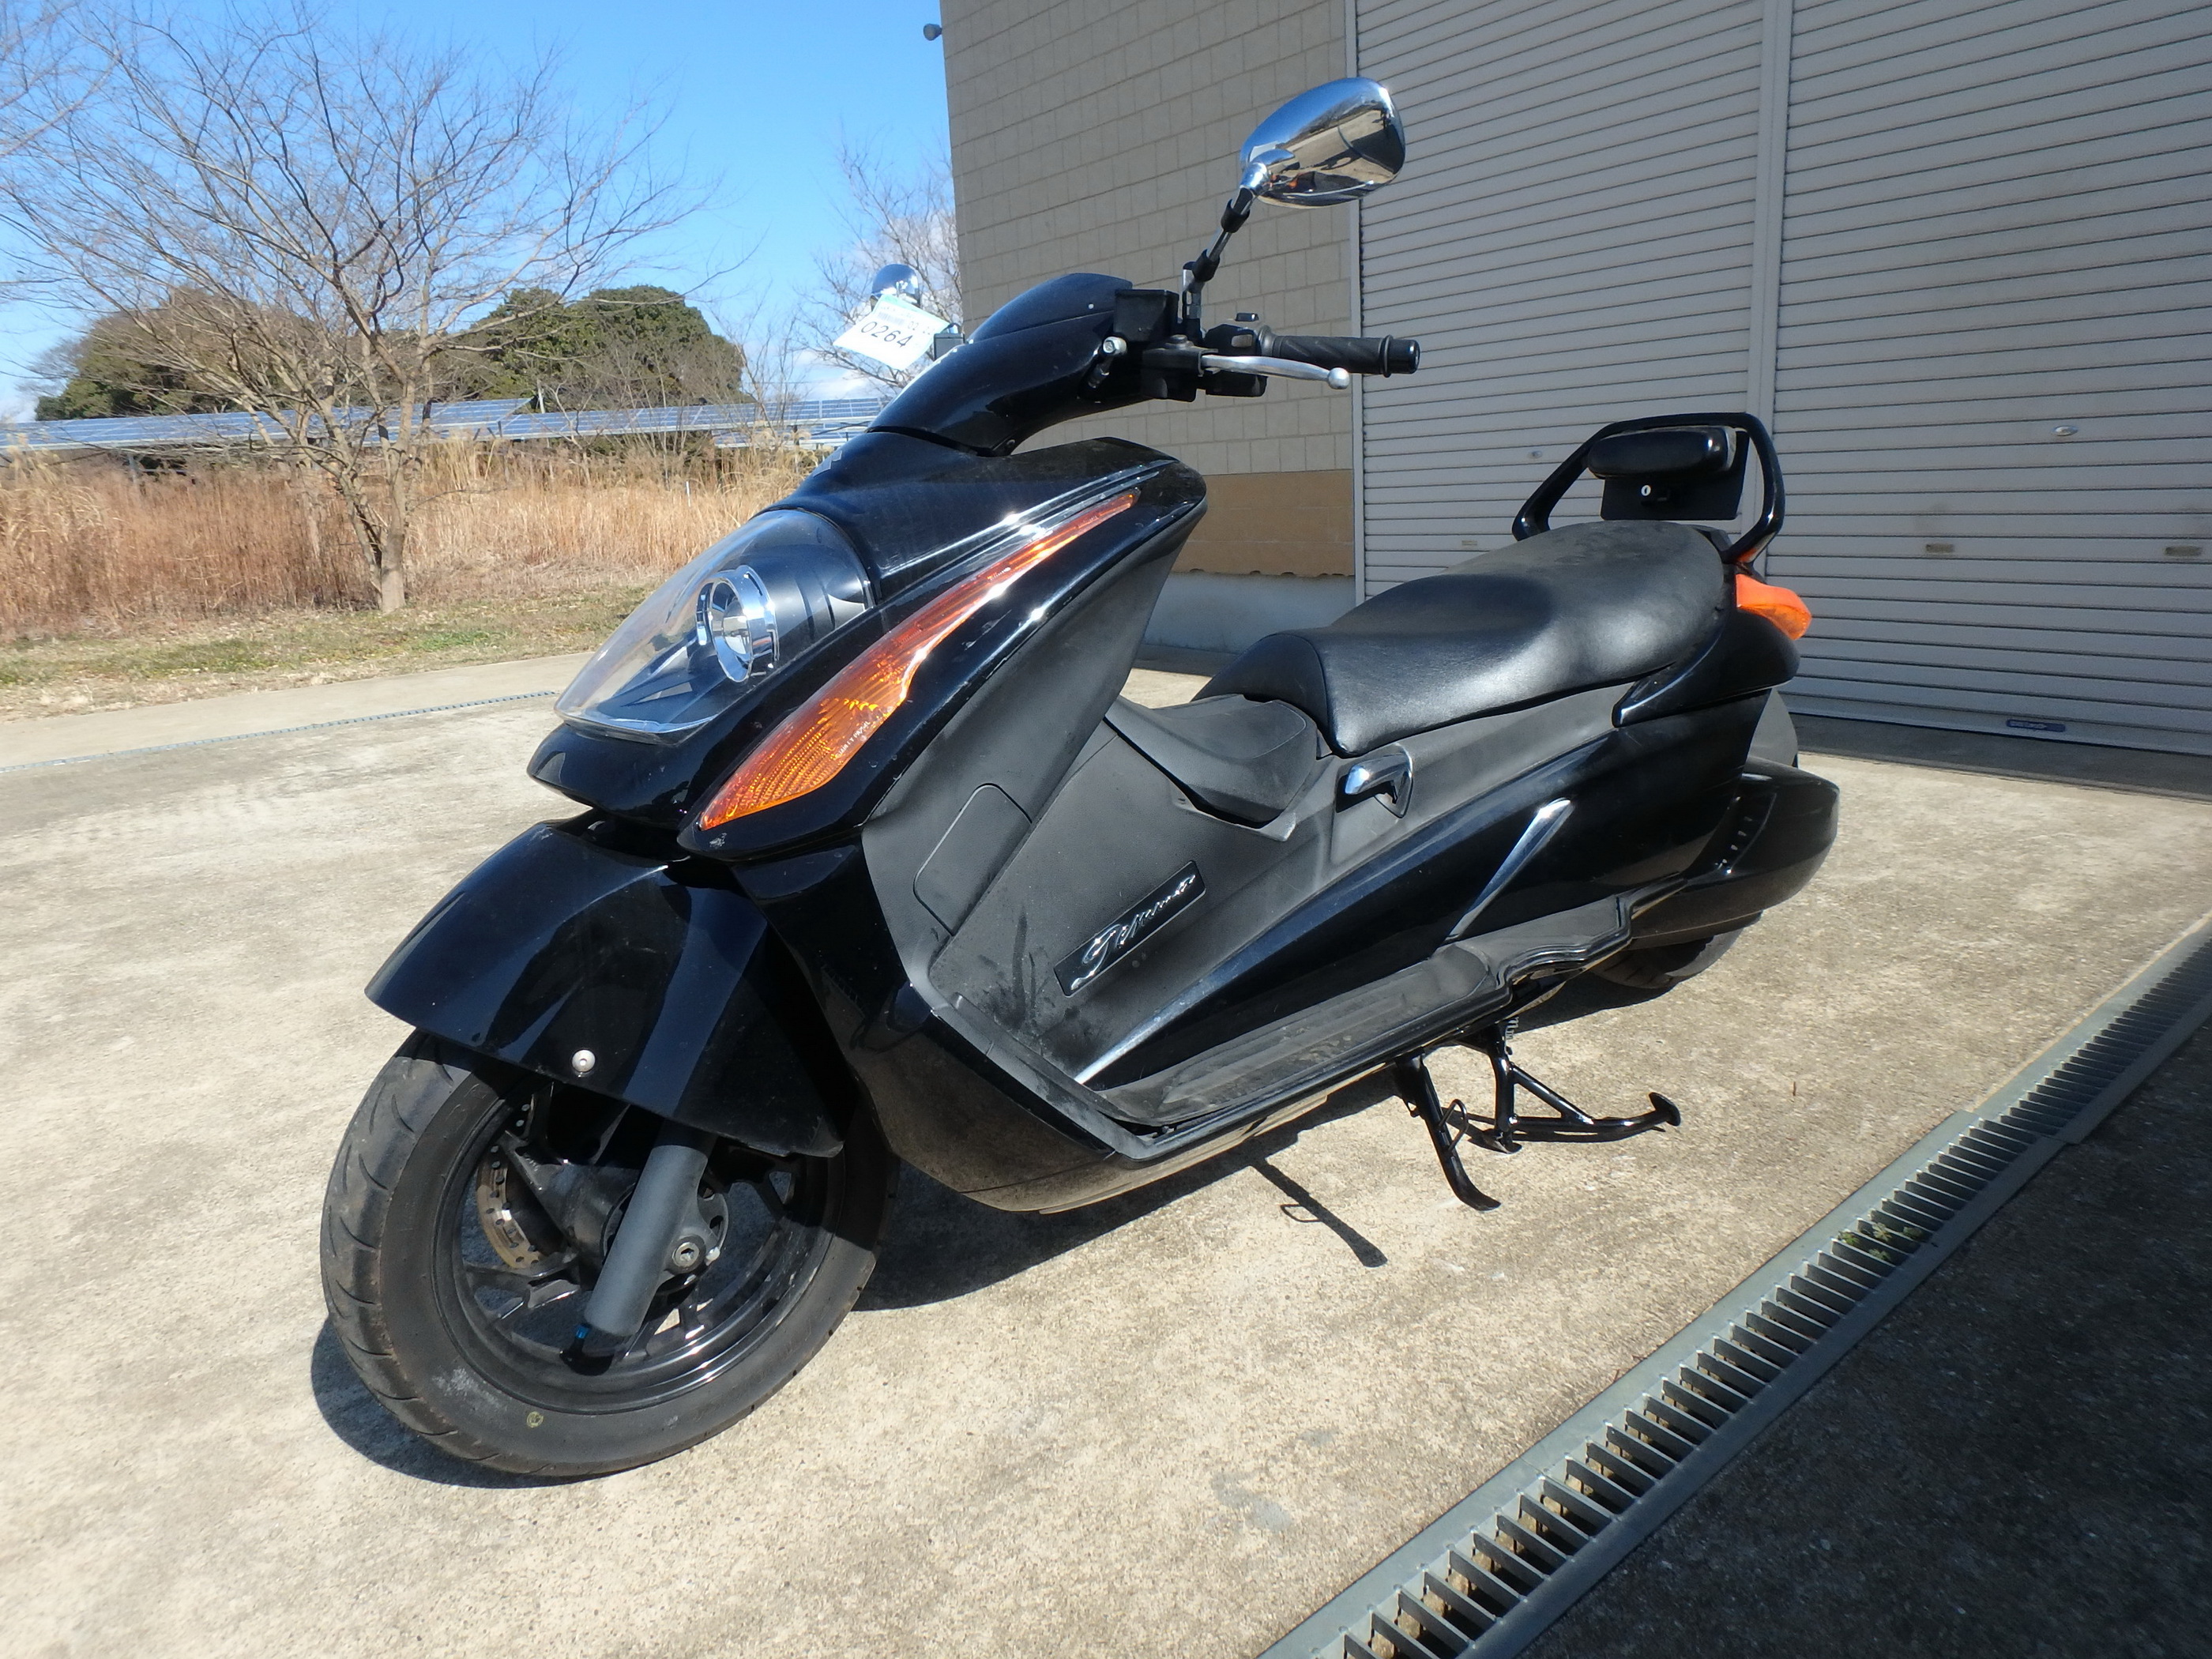 Buy motorcycle Suzuki Gemma: japanese motorcycle Suzuki Gemma 